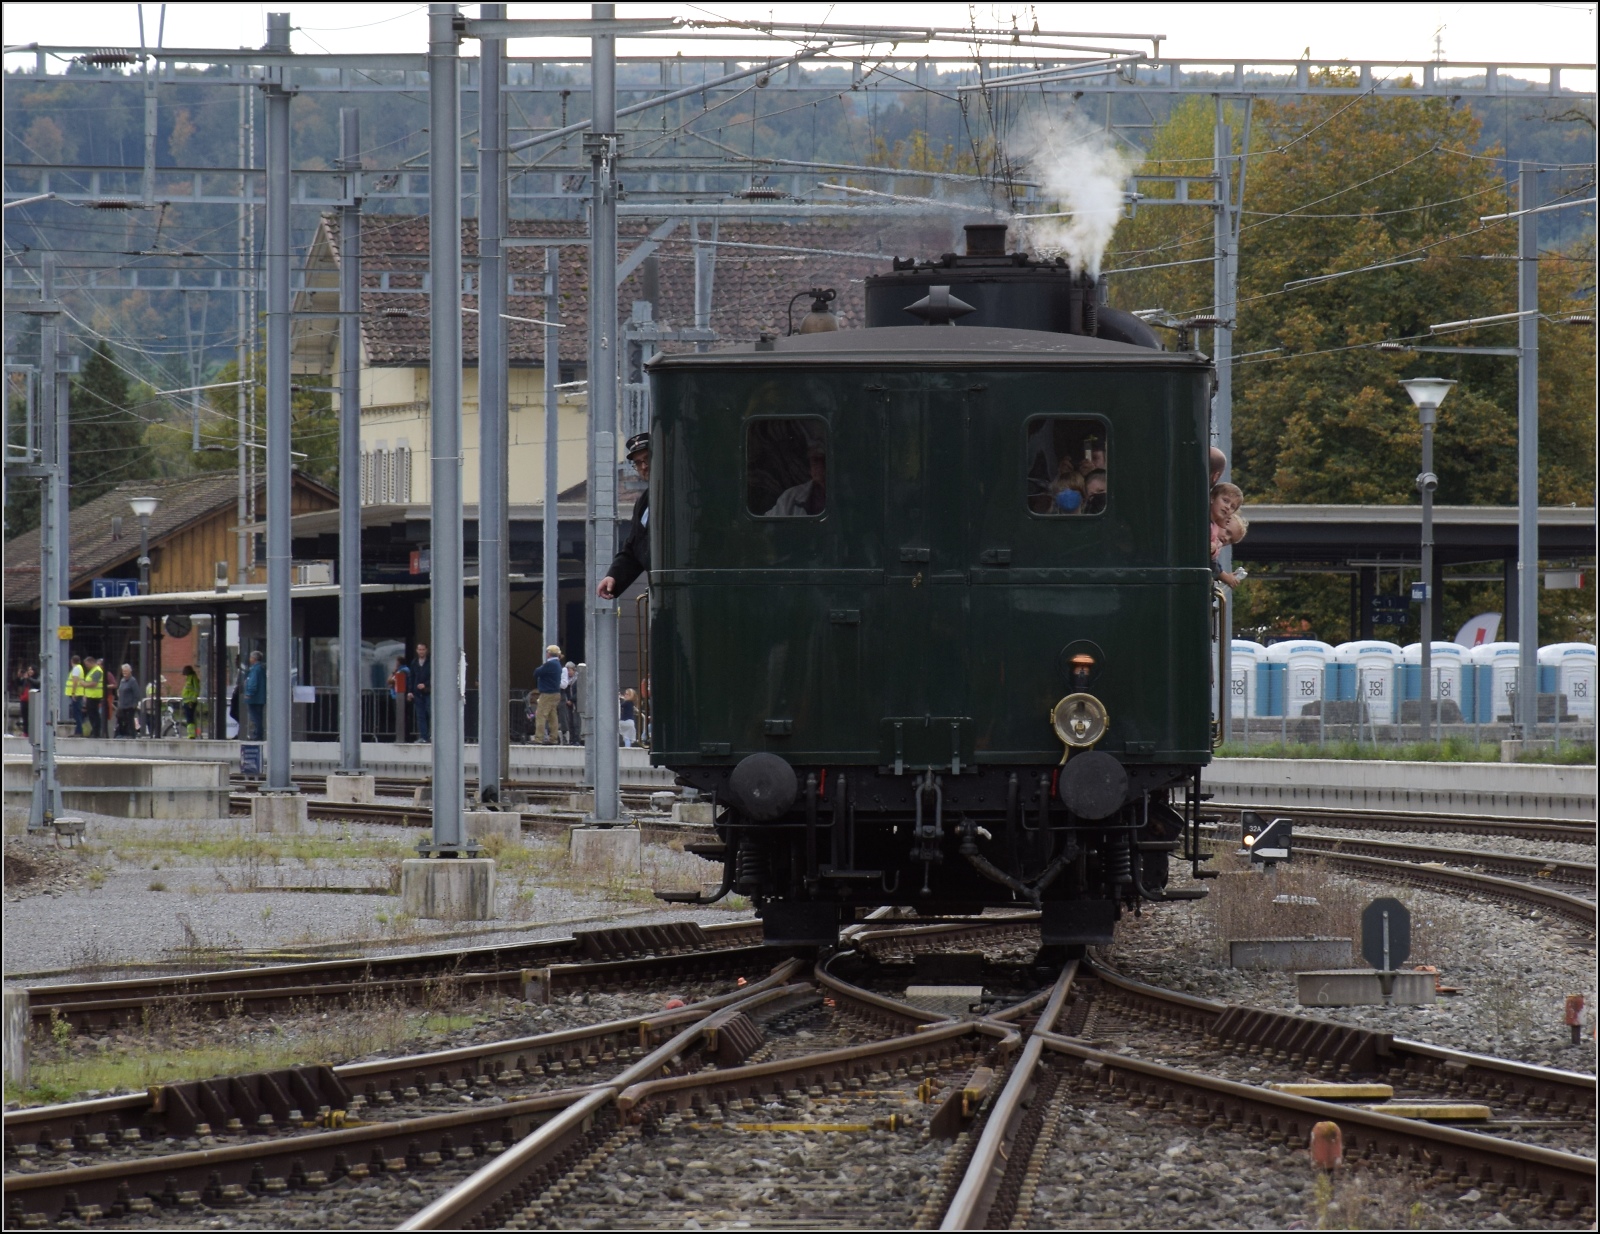 Den Schweizer Bahnen zum 175. Geburtstag.

UeBB Czm 1/2 fhrt einen Shuttleservice zwischen Depot und Bahnhof Koblenz. Oktober 2022.